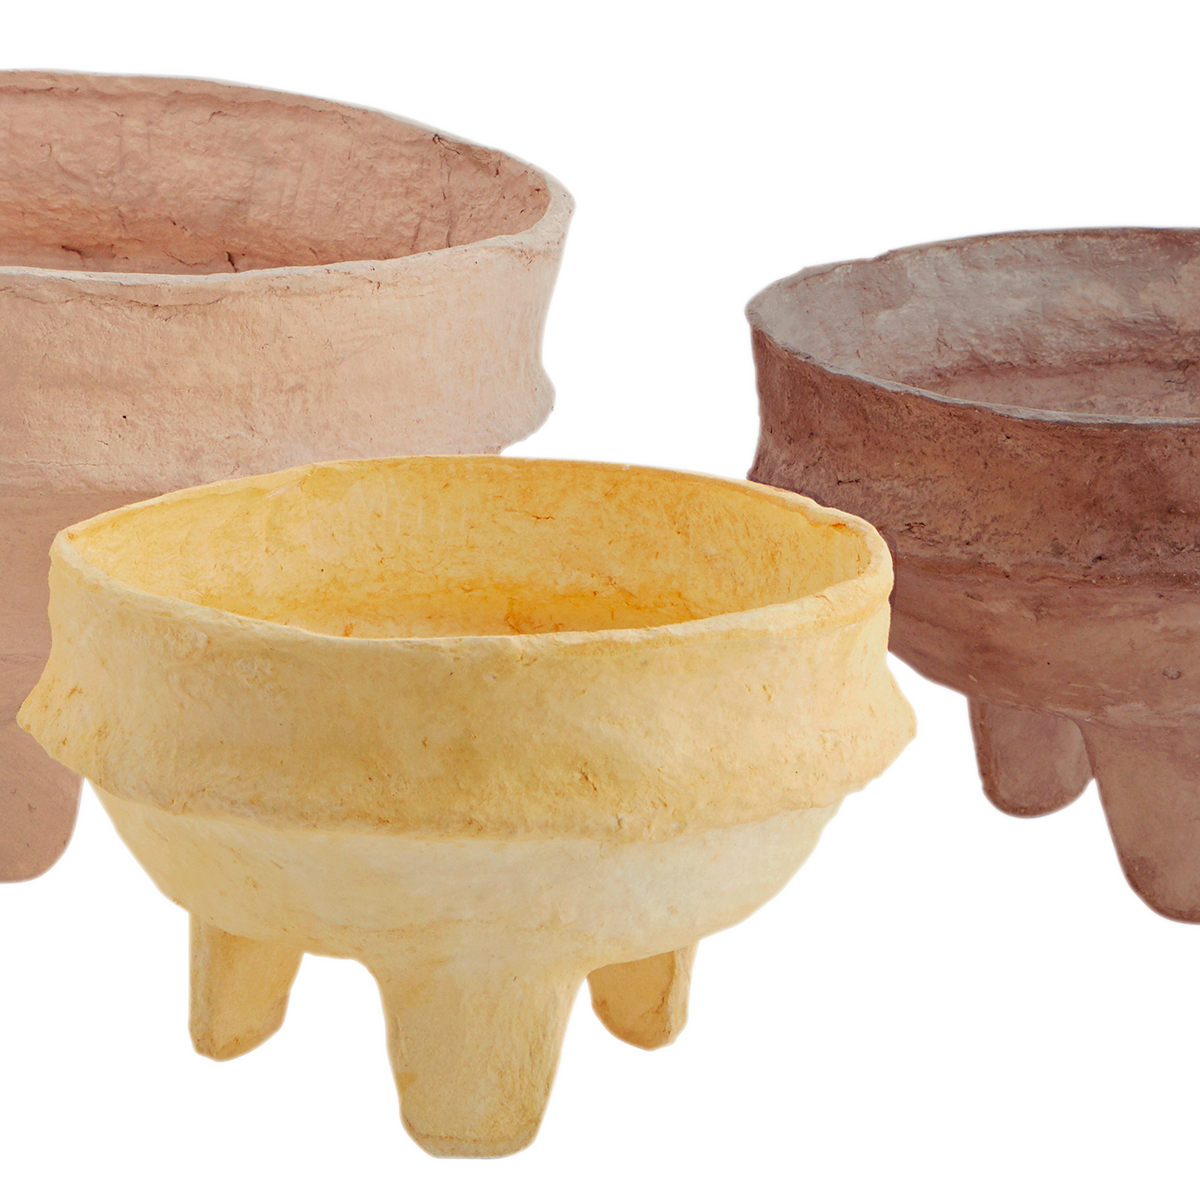 Handmade paper pulp bowls